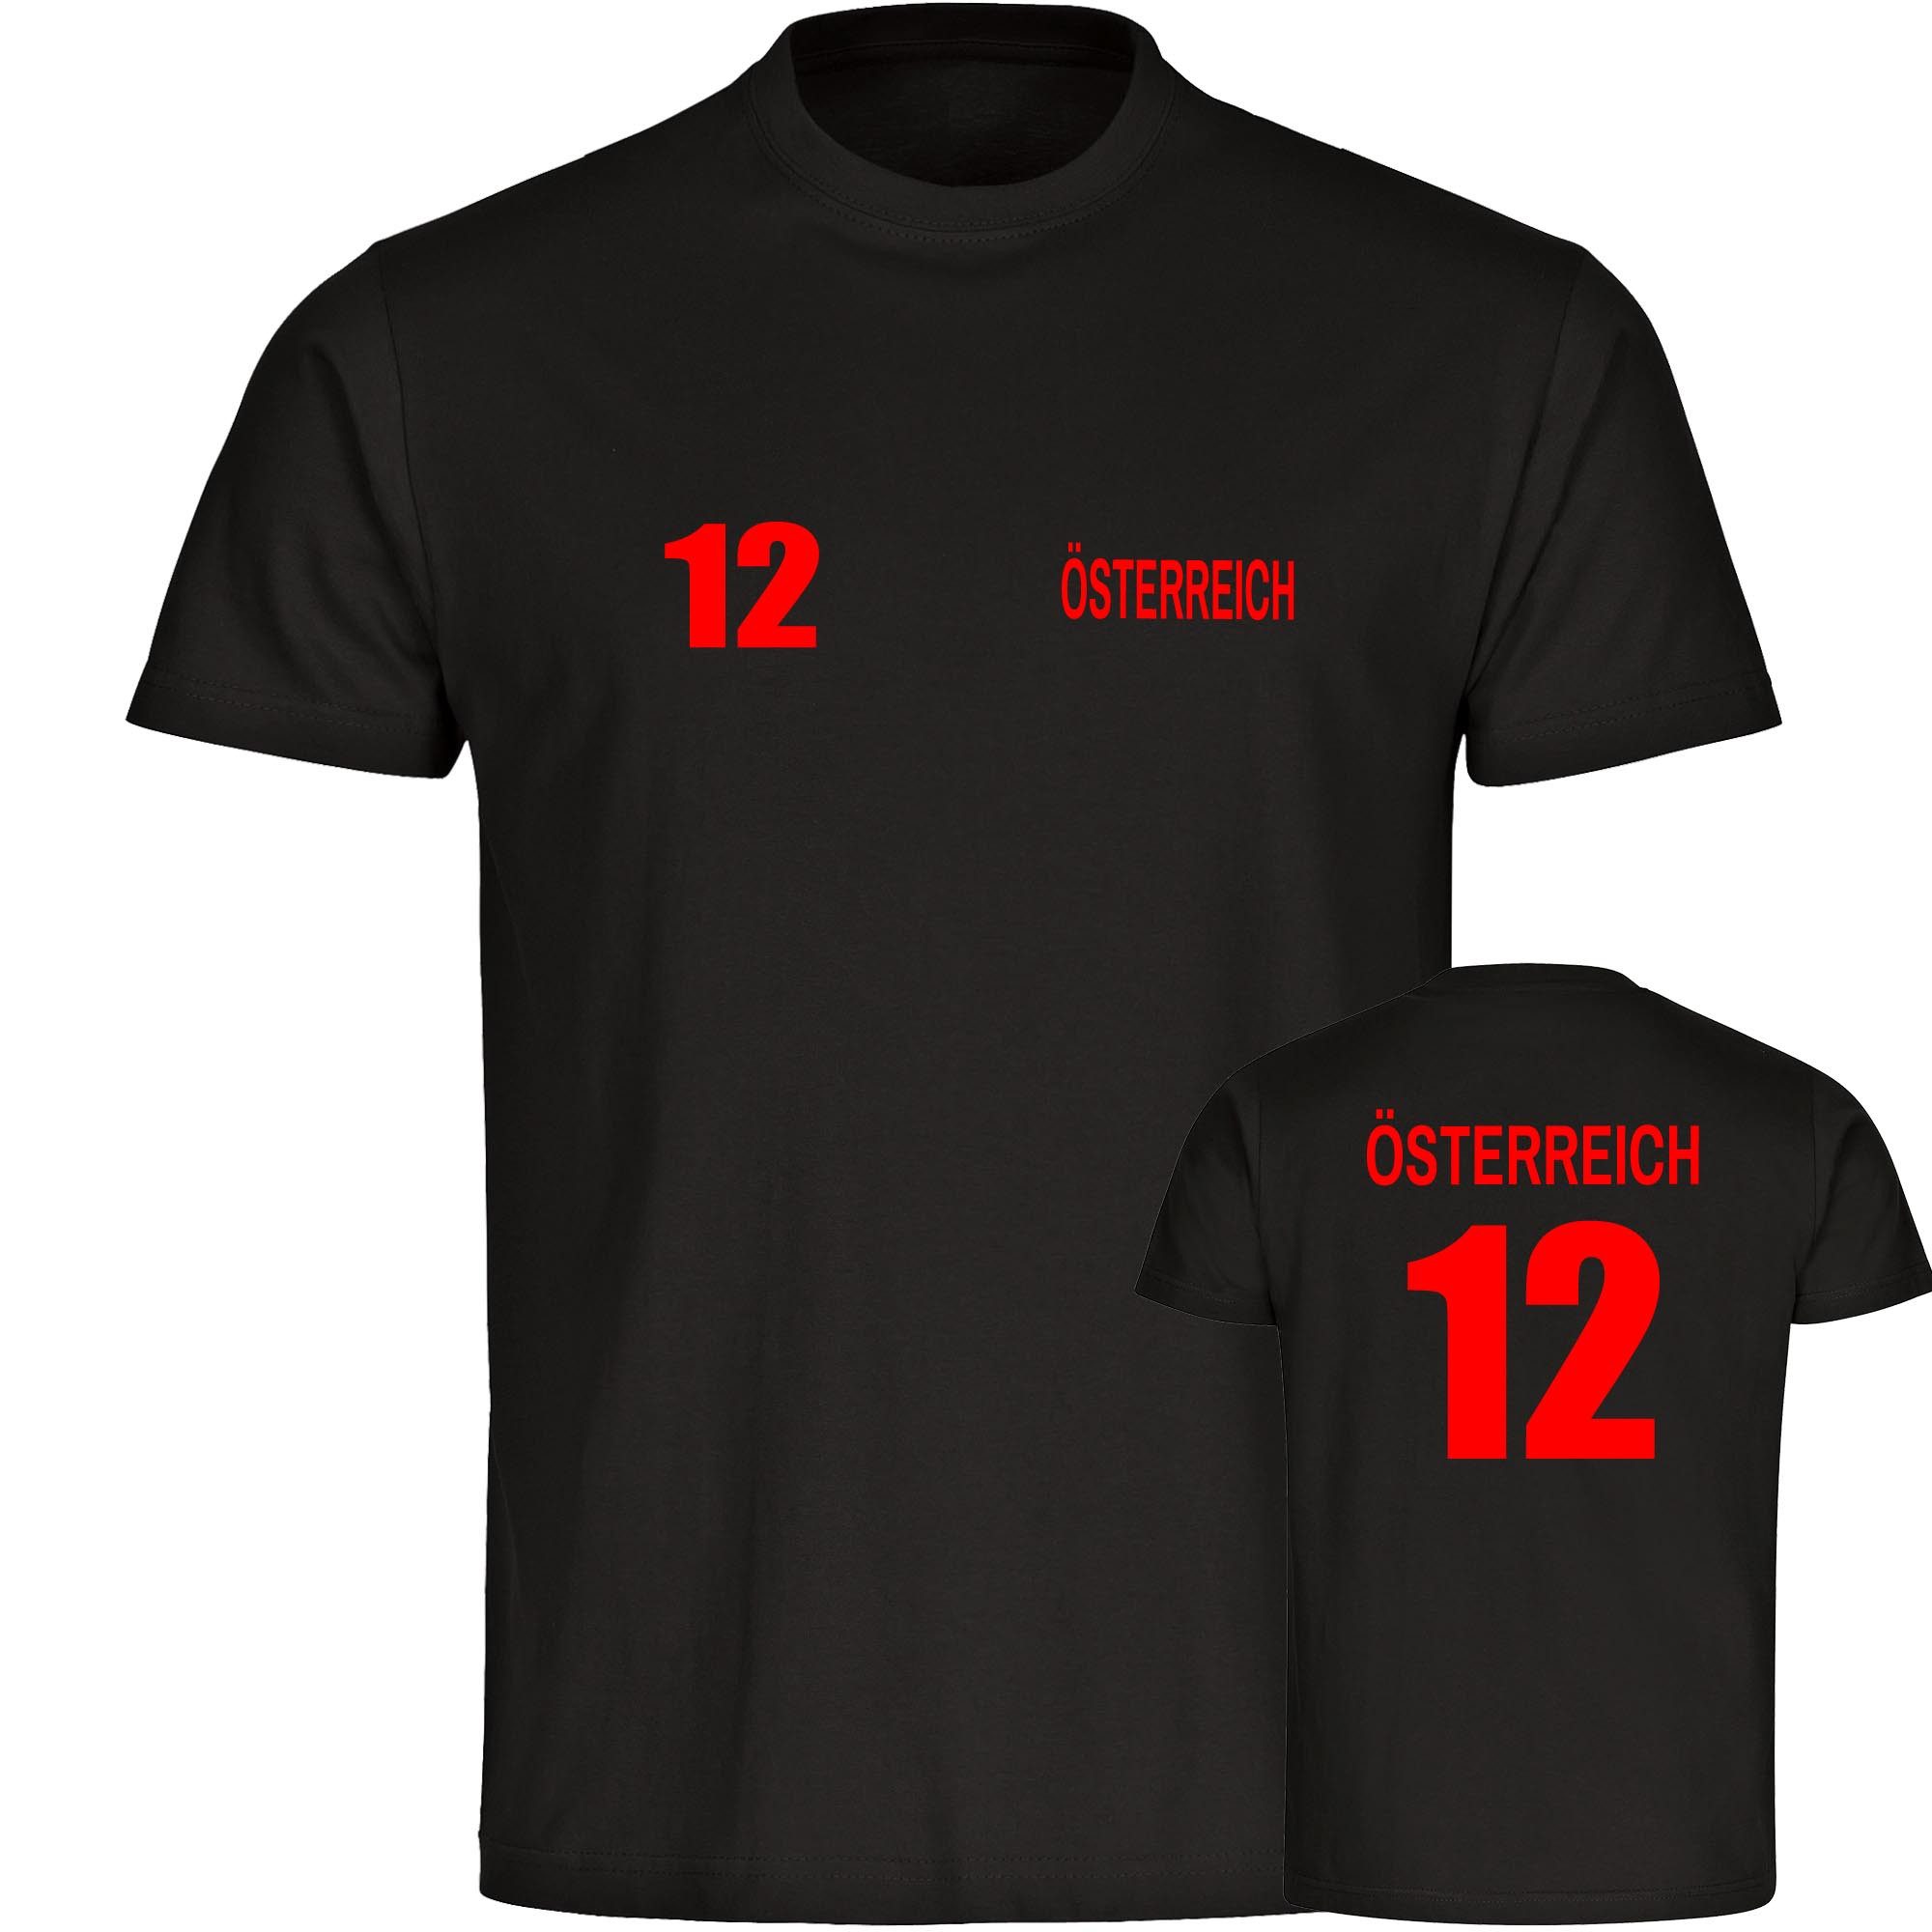 multifanshop T-Shirt Herren Österreich - Trikot 12 - Männer